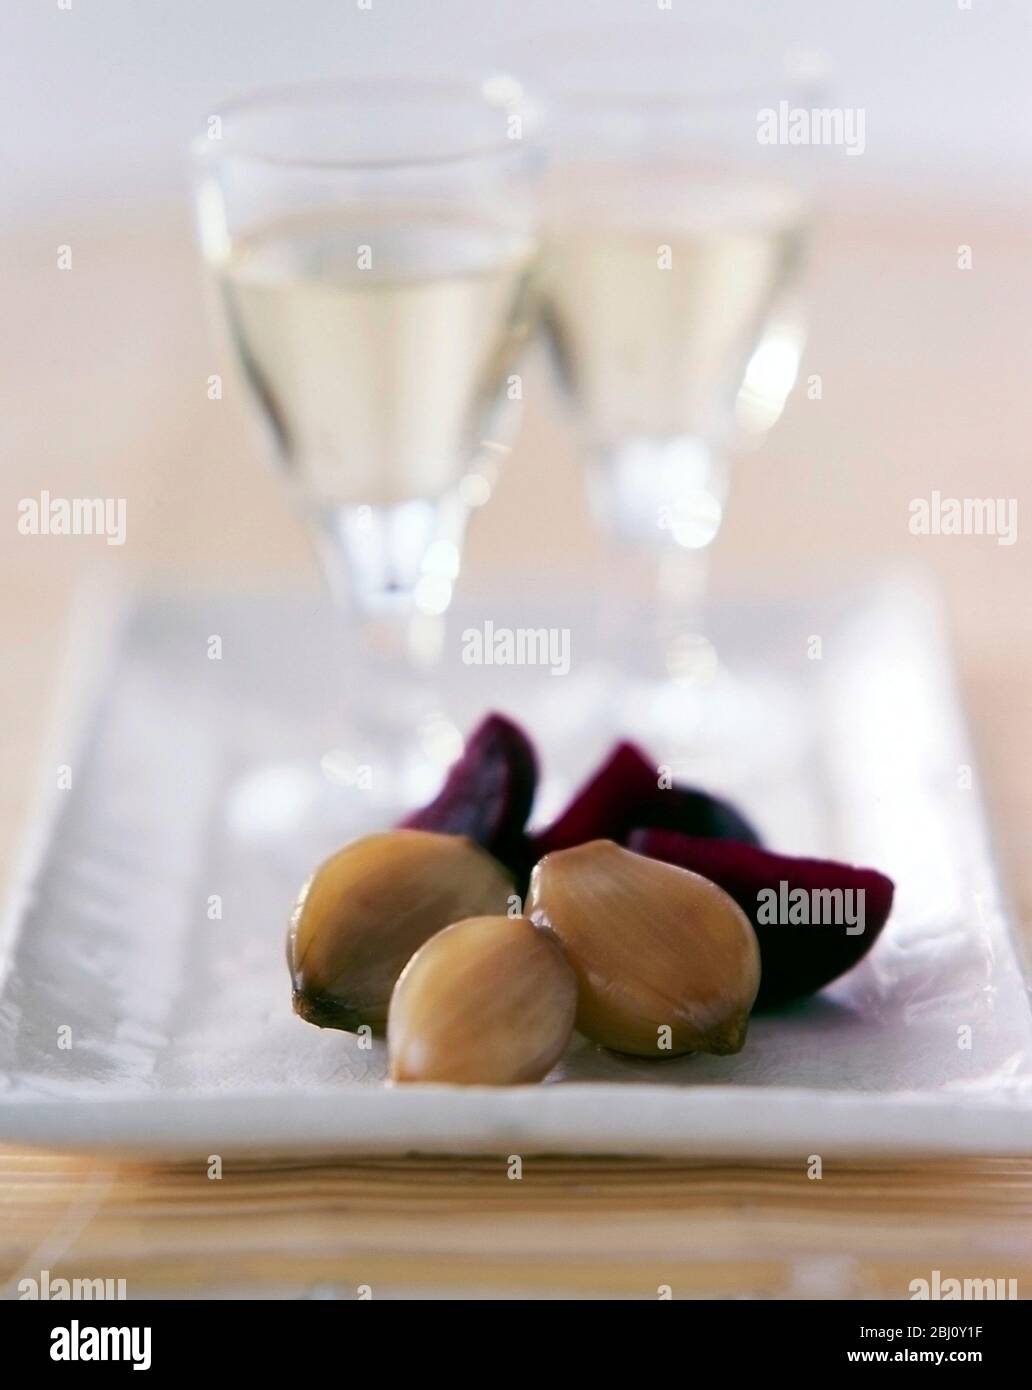 Eingelegte Zwiebeln und Rote Bete Stücke so accomoanient zu gekühltem Weißwein wie ein Horsd'ouevre - Stockfoto